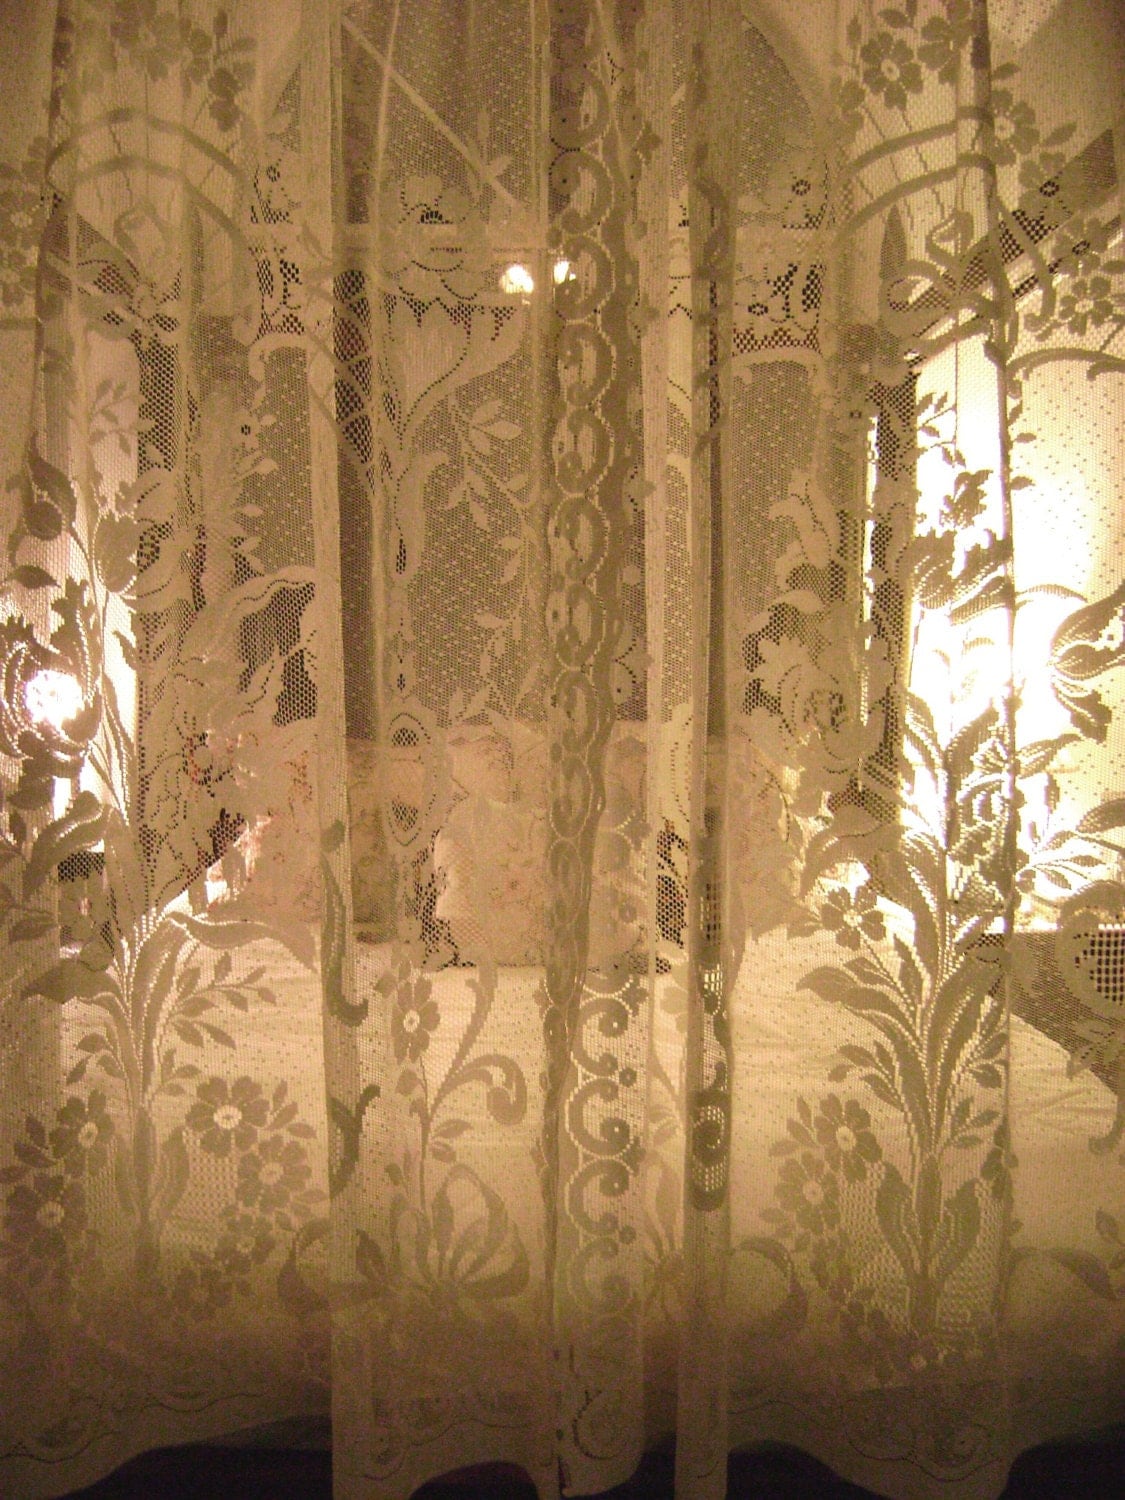 VintajMercantile Vintage Lace Curtains Ecru Floral